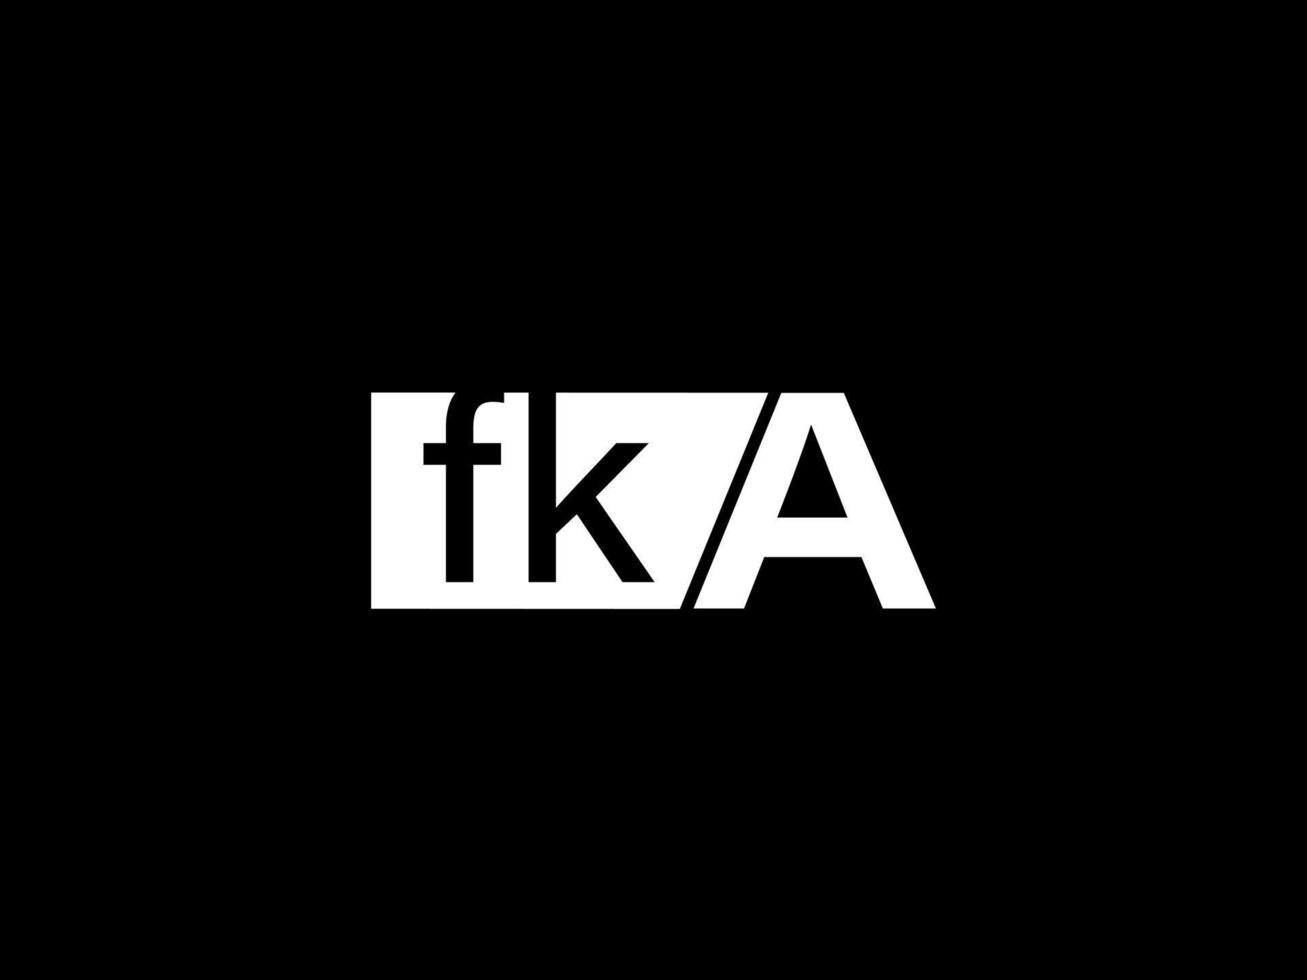 logotipo fka e arte vetorial de design gráfico, ícones isolados em fundo preto vetor